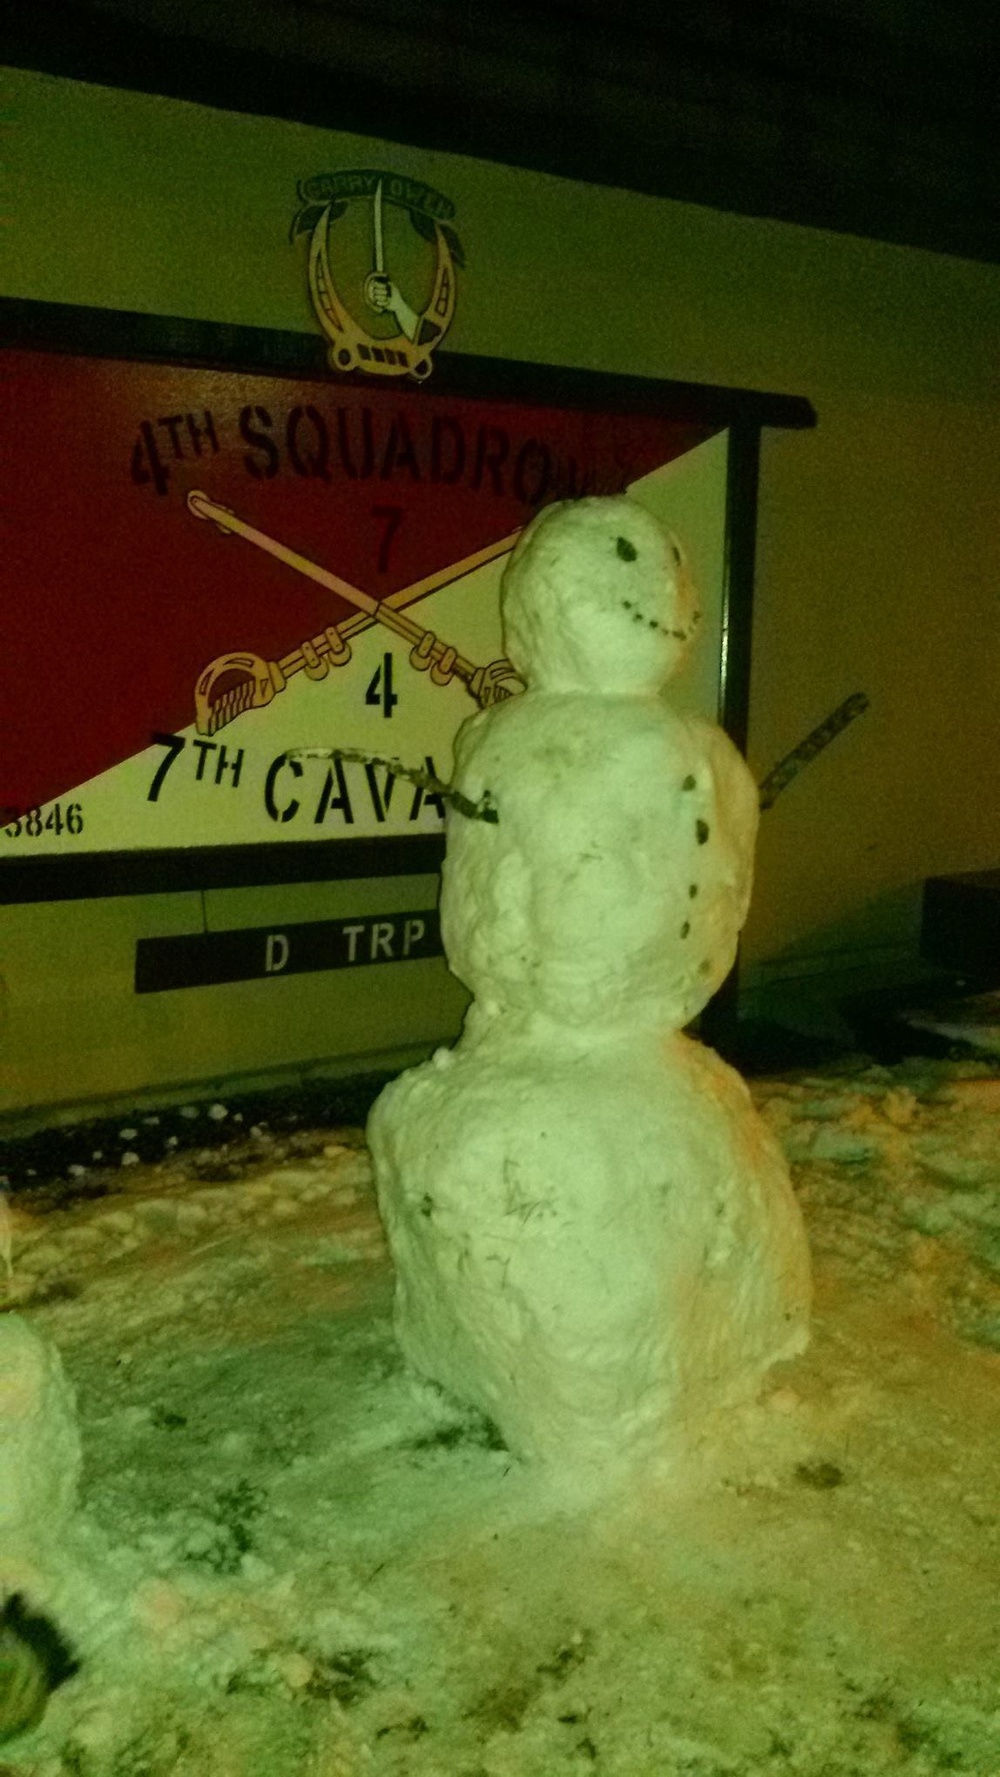 4-7 CAV's snowman